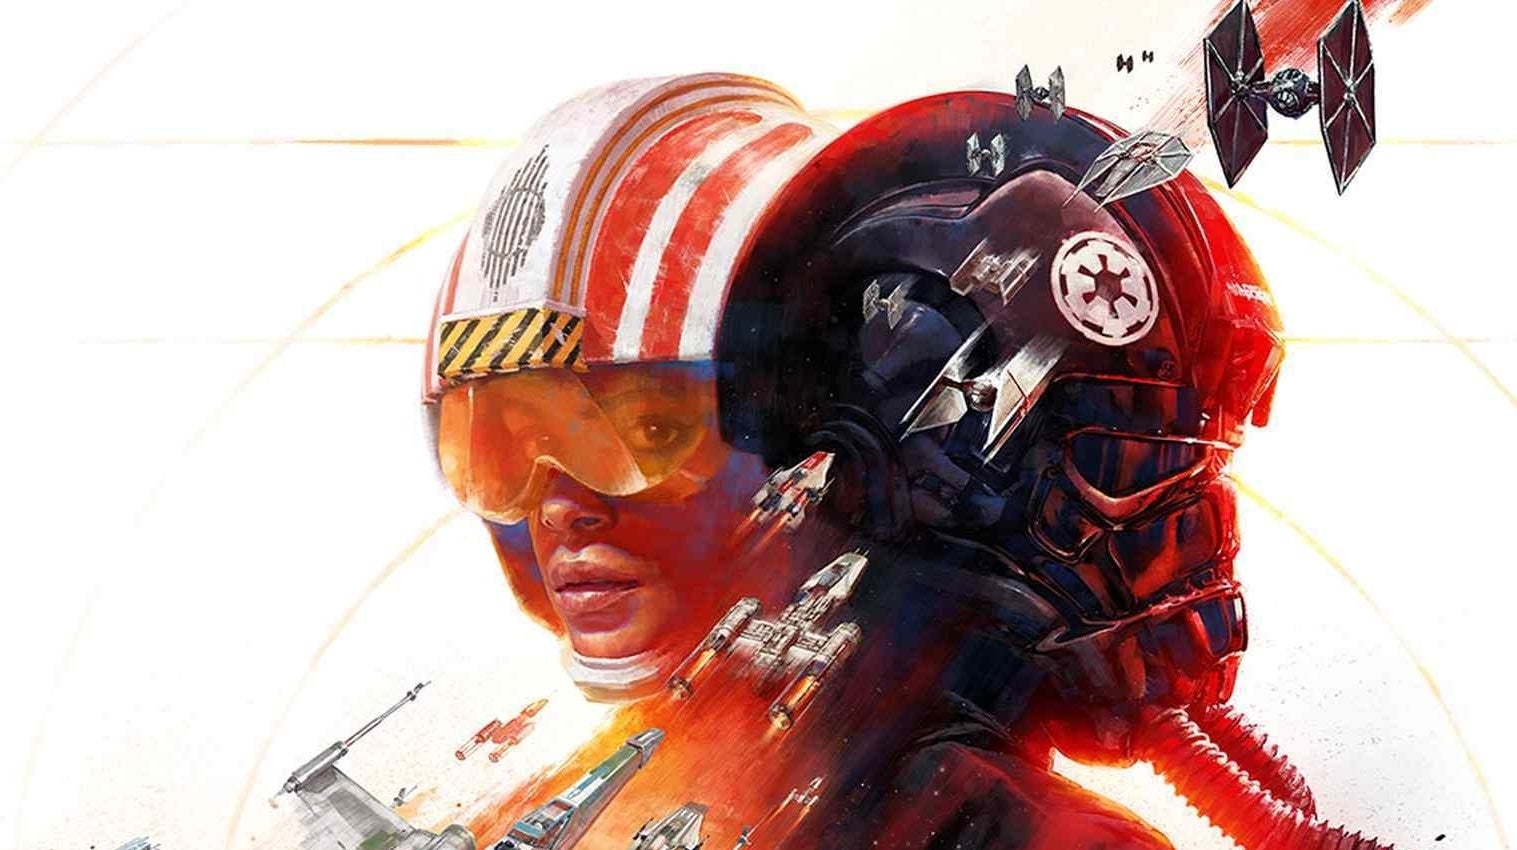 Imagen para No habrá ningún juego de Star Wars en el EA Play Live